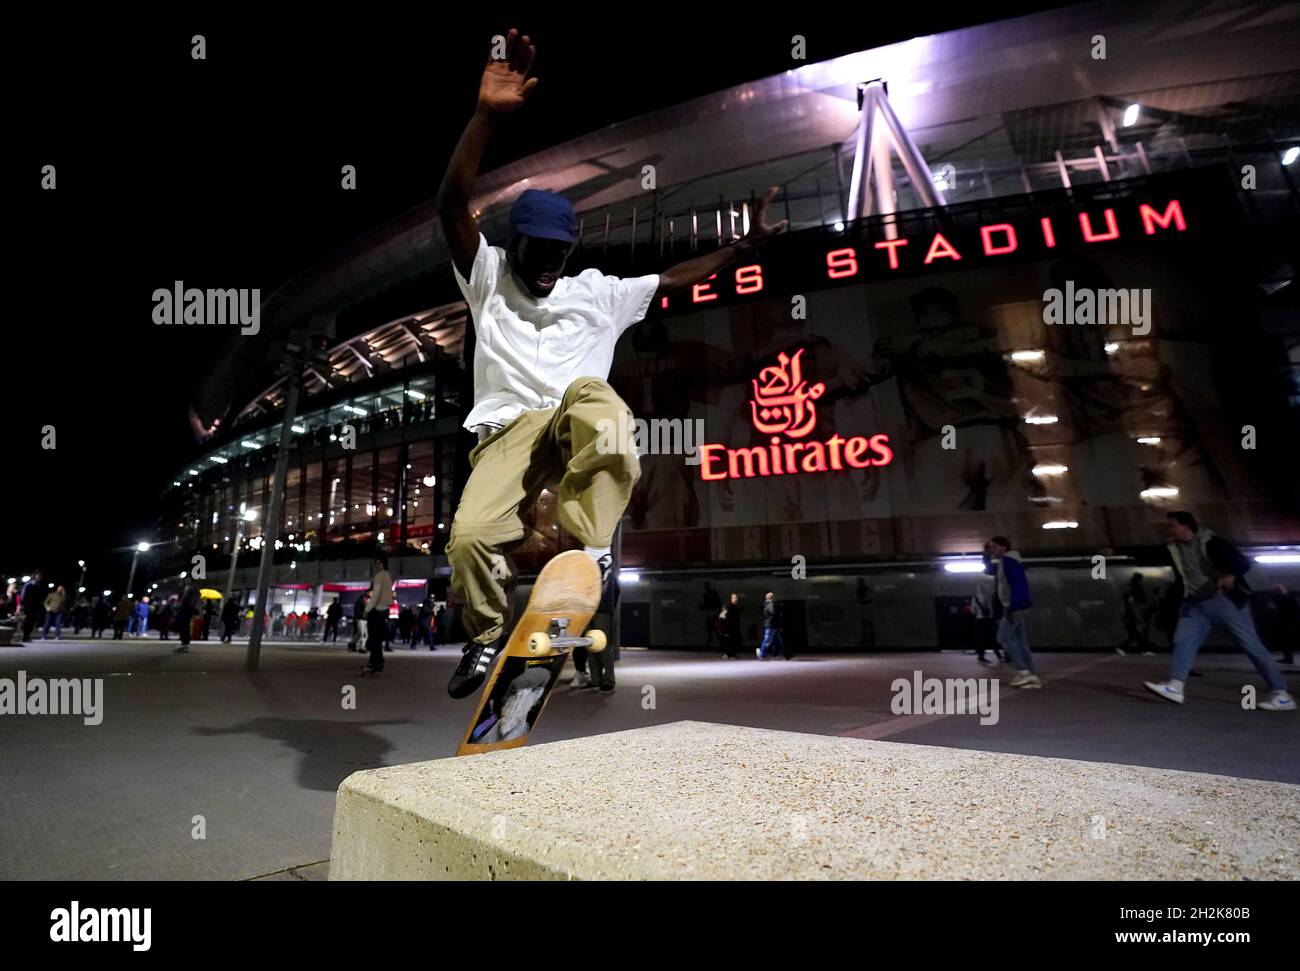 Una persona skateboard fuori dallo stadio prima della partita della Premier League all'Emirates Stadium di Londra. Data foto: Venerdì 22 ottobre 2021. Foto Stock